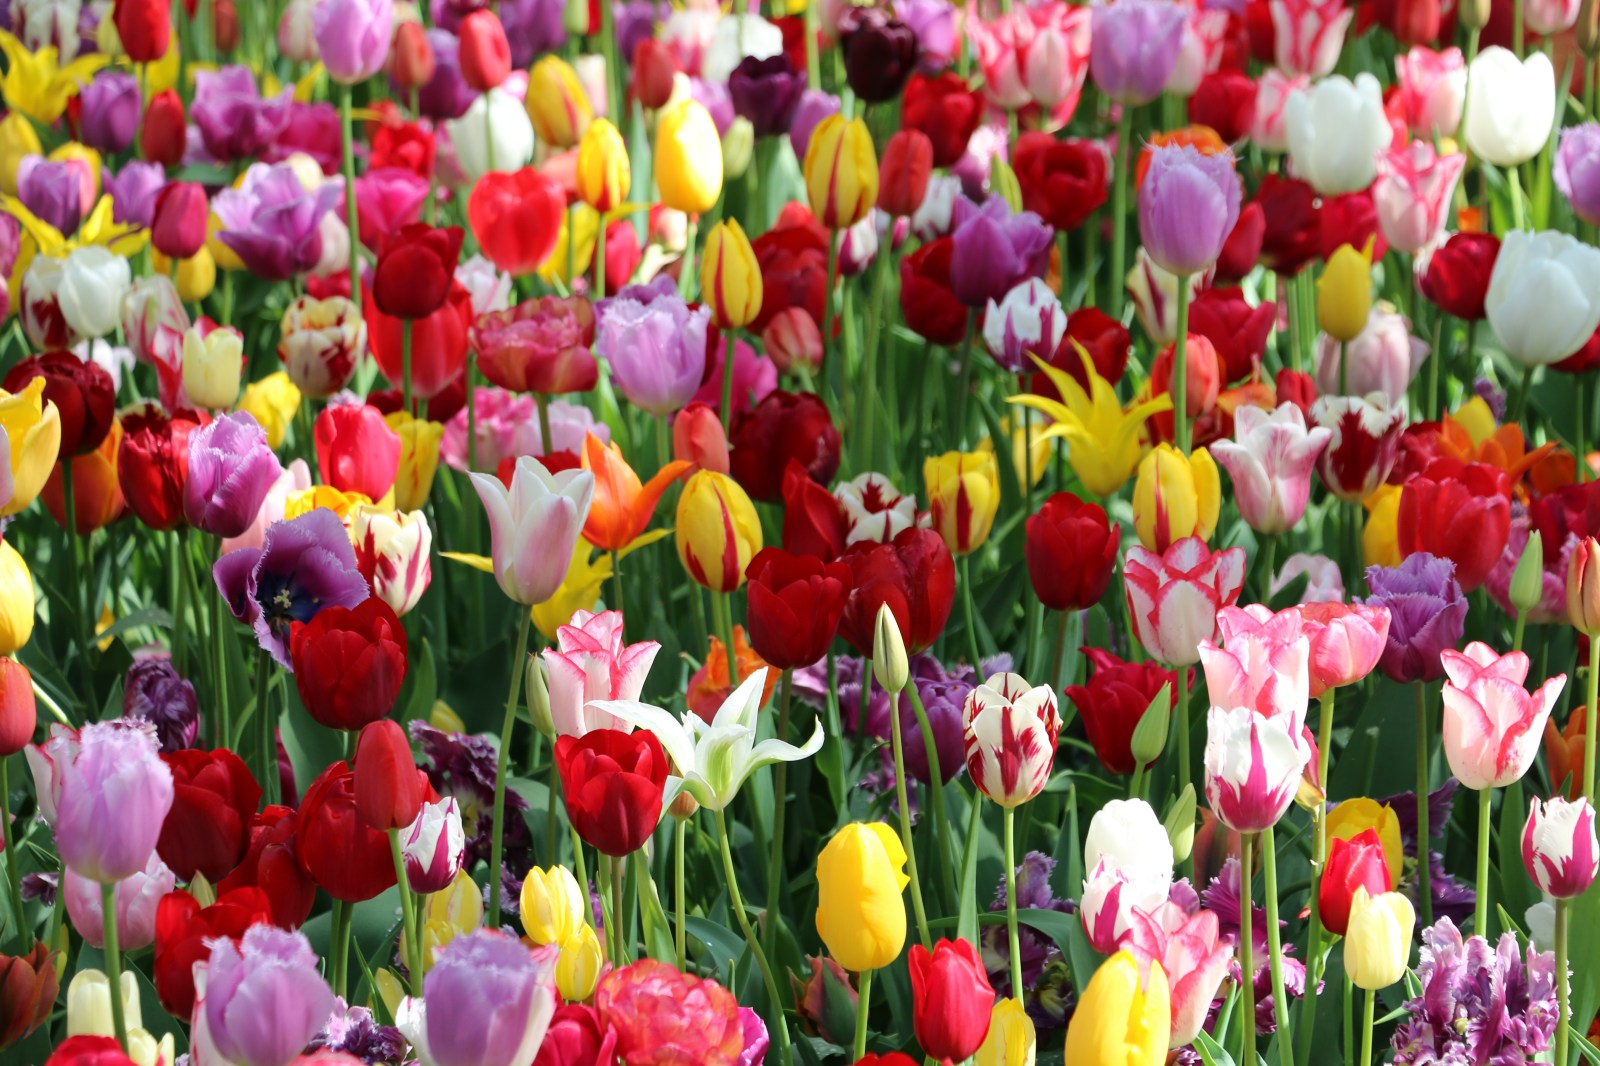 Acheter Bulbe de tulipe? Achat tulipes en ligne!